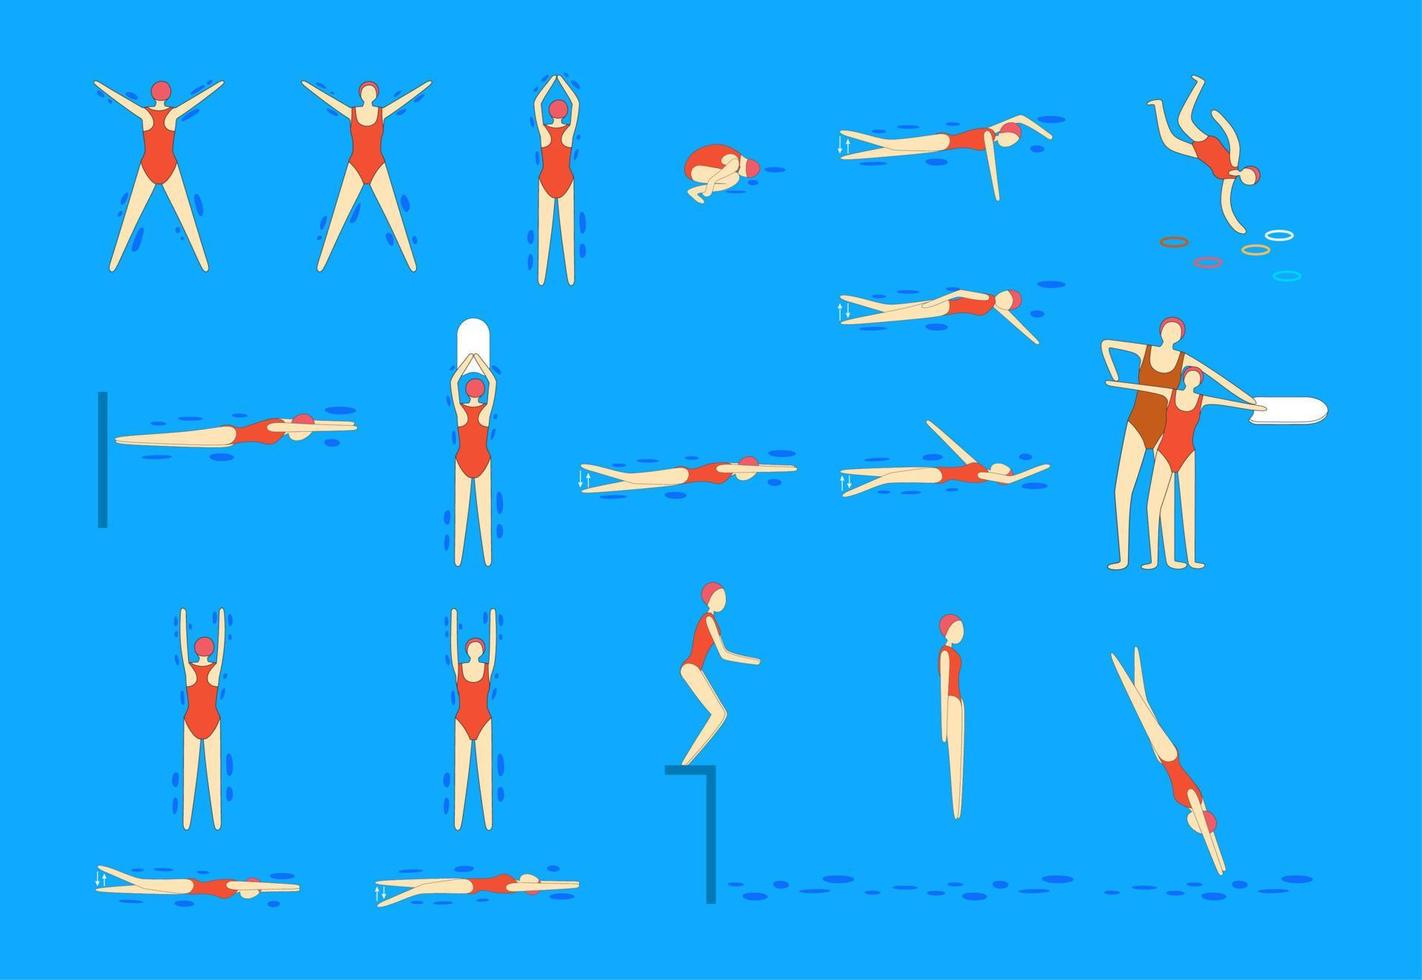 Vektorfiguren Schwimmer in Aktionsposen. junge Mädchen zeigen verschiedene Schwimmhaltungen. Satz oder Sammlung. Schwimmbad. Schwimmen lernen. Sport. vektor